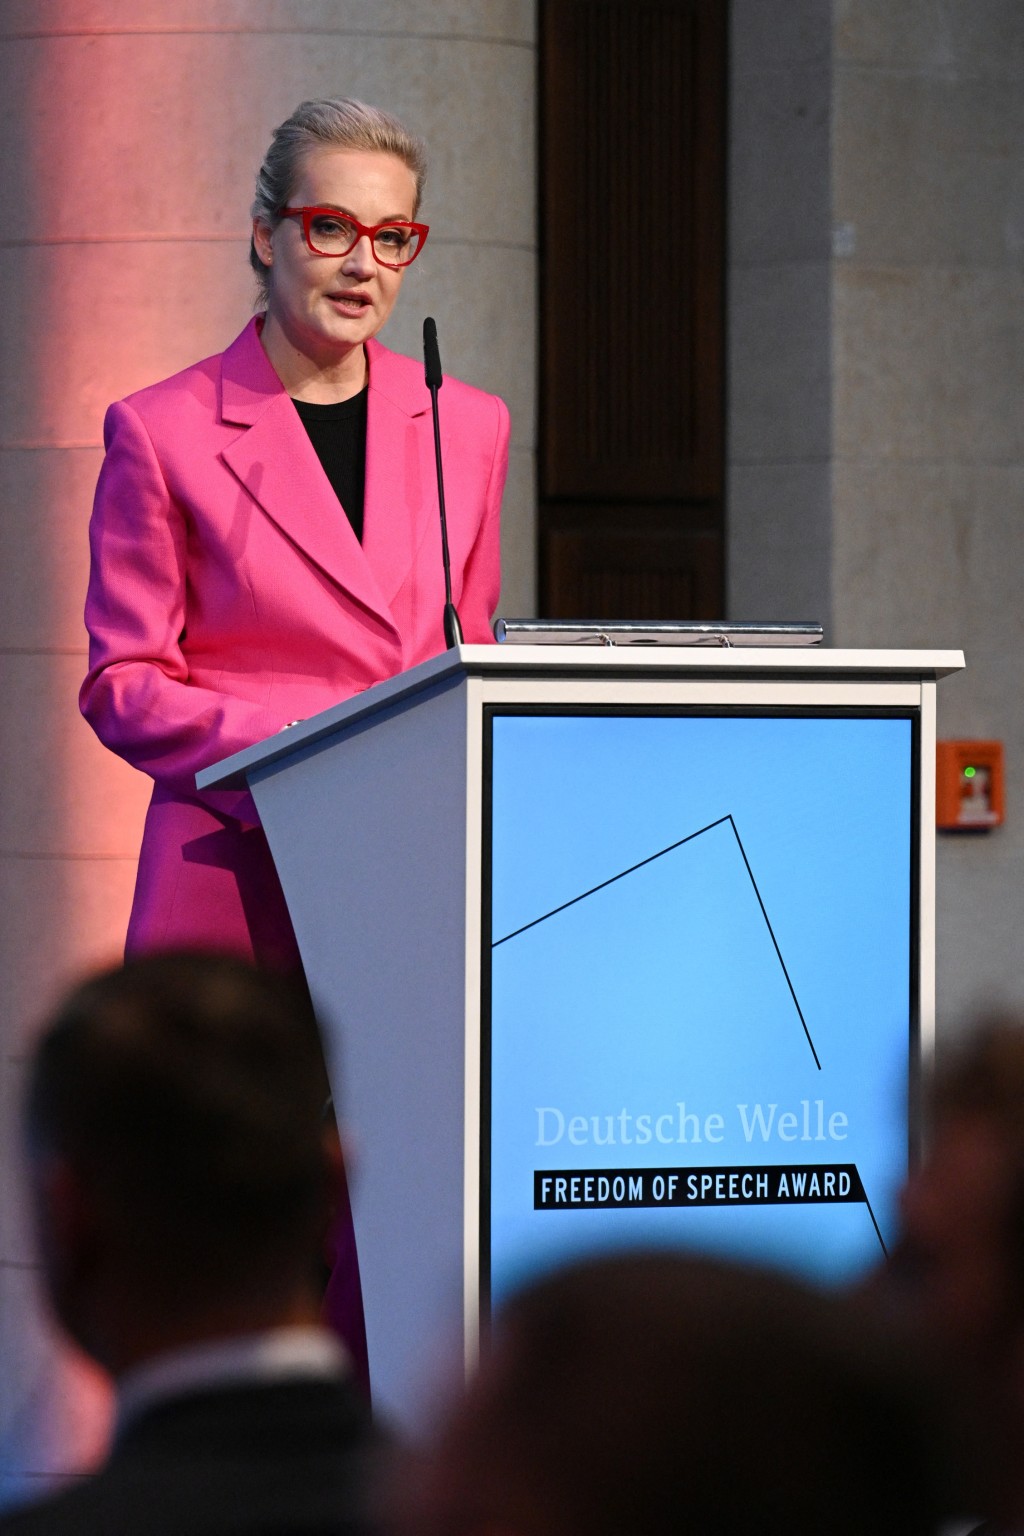 尤利娅上月在柏林获颁发自由言论奖。路透社